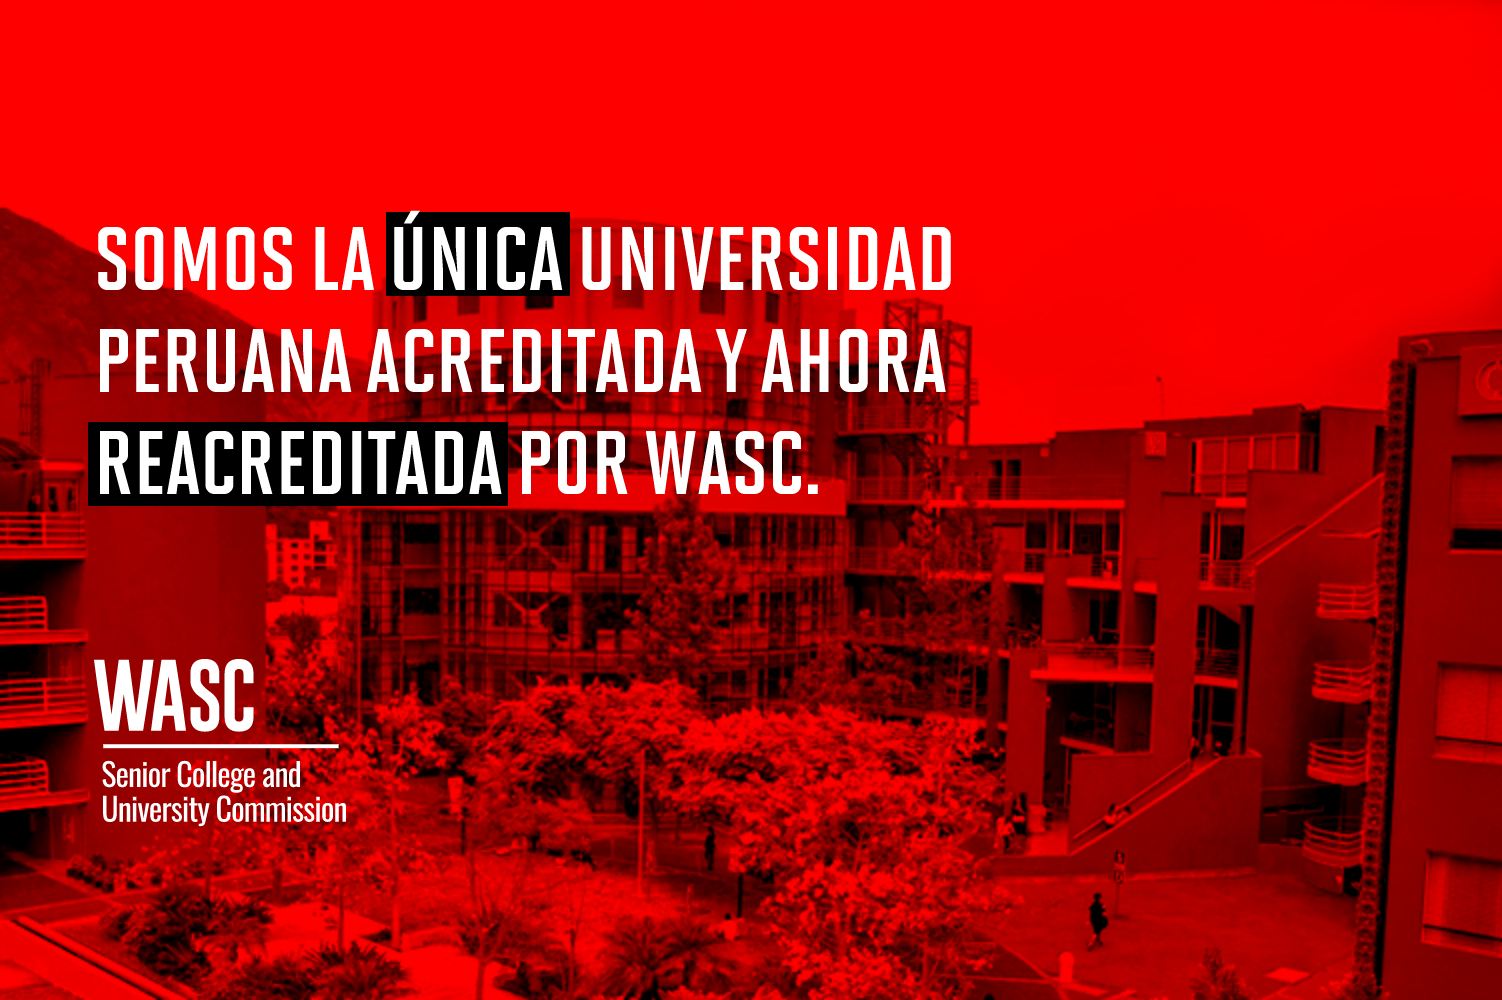 Somos la única universidad peruana acreditada y ahora reacreditada por WASC